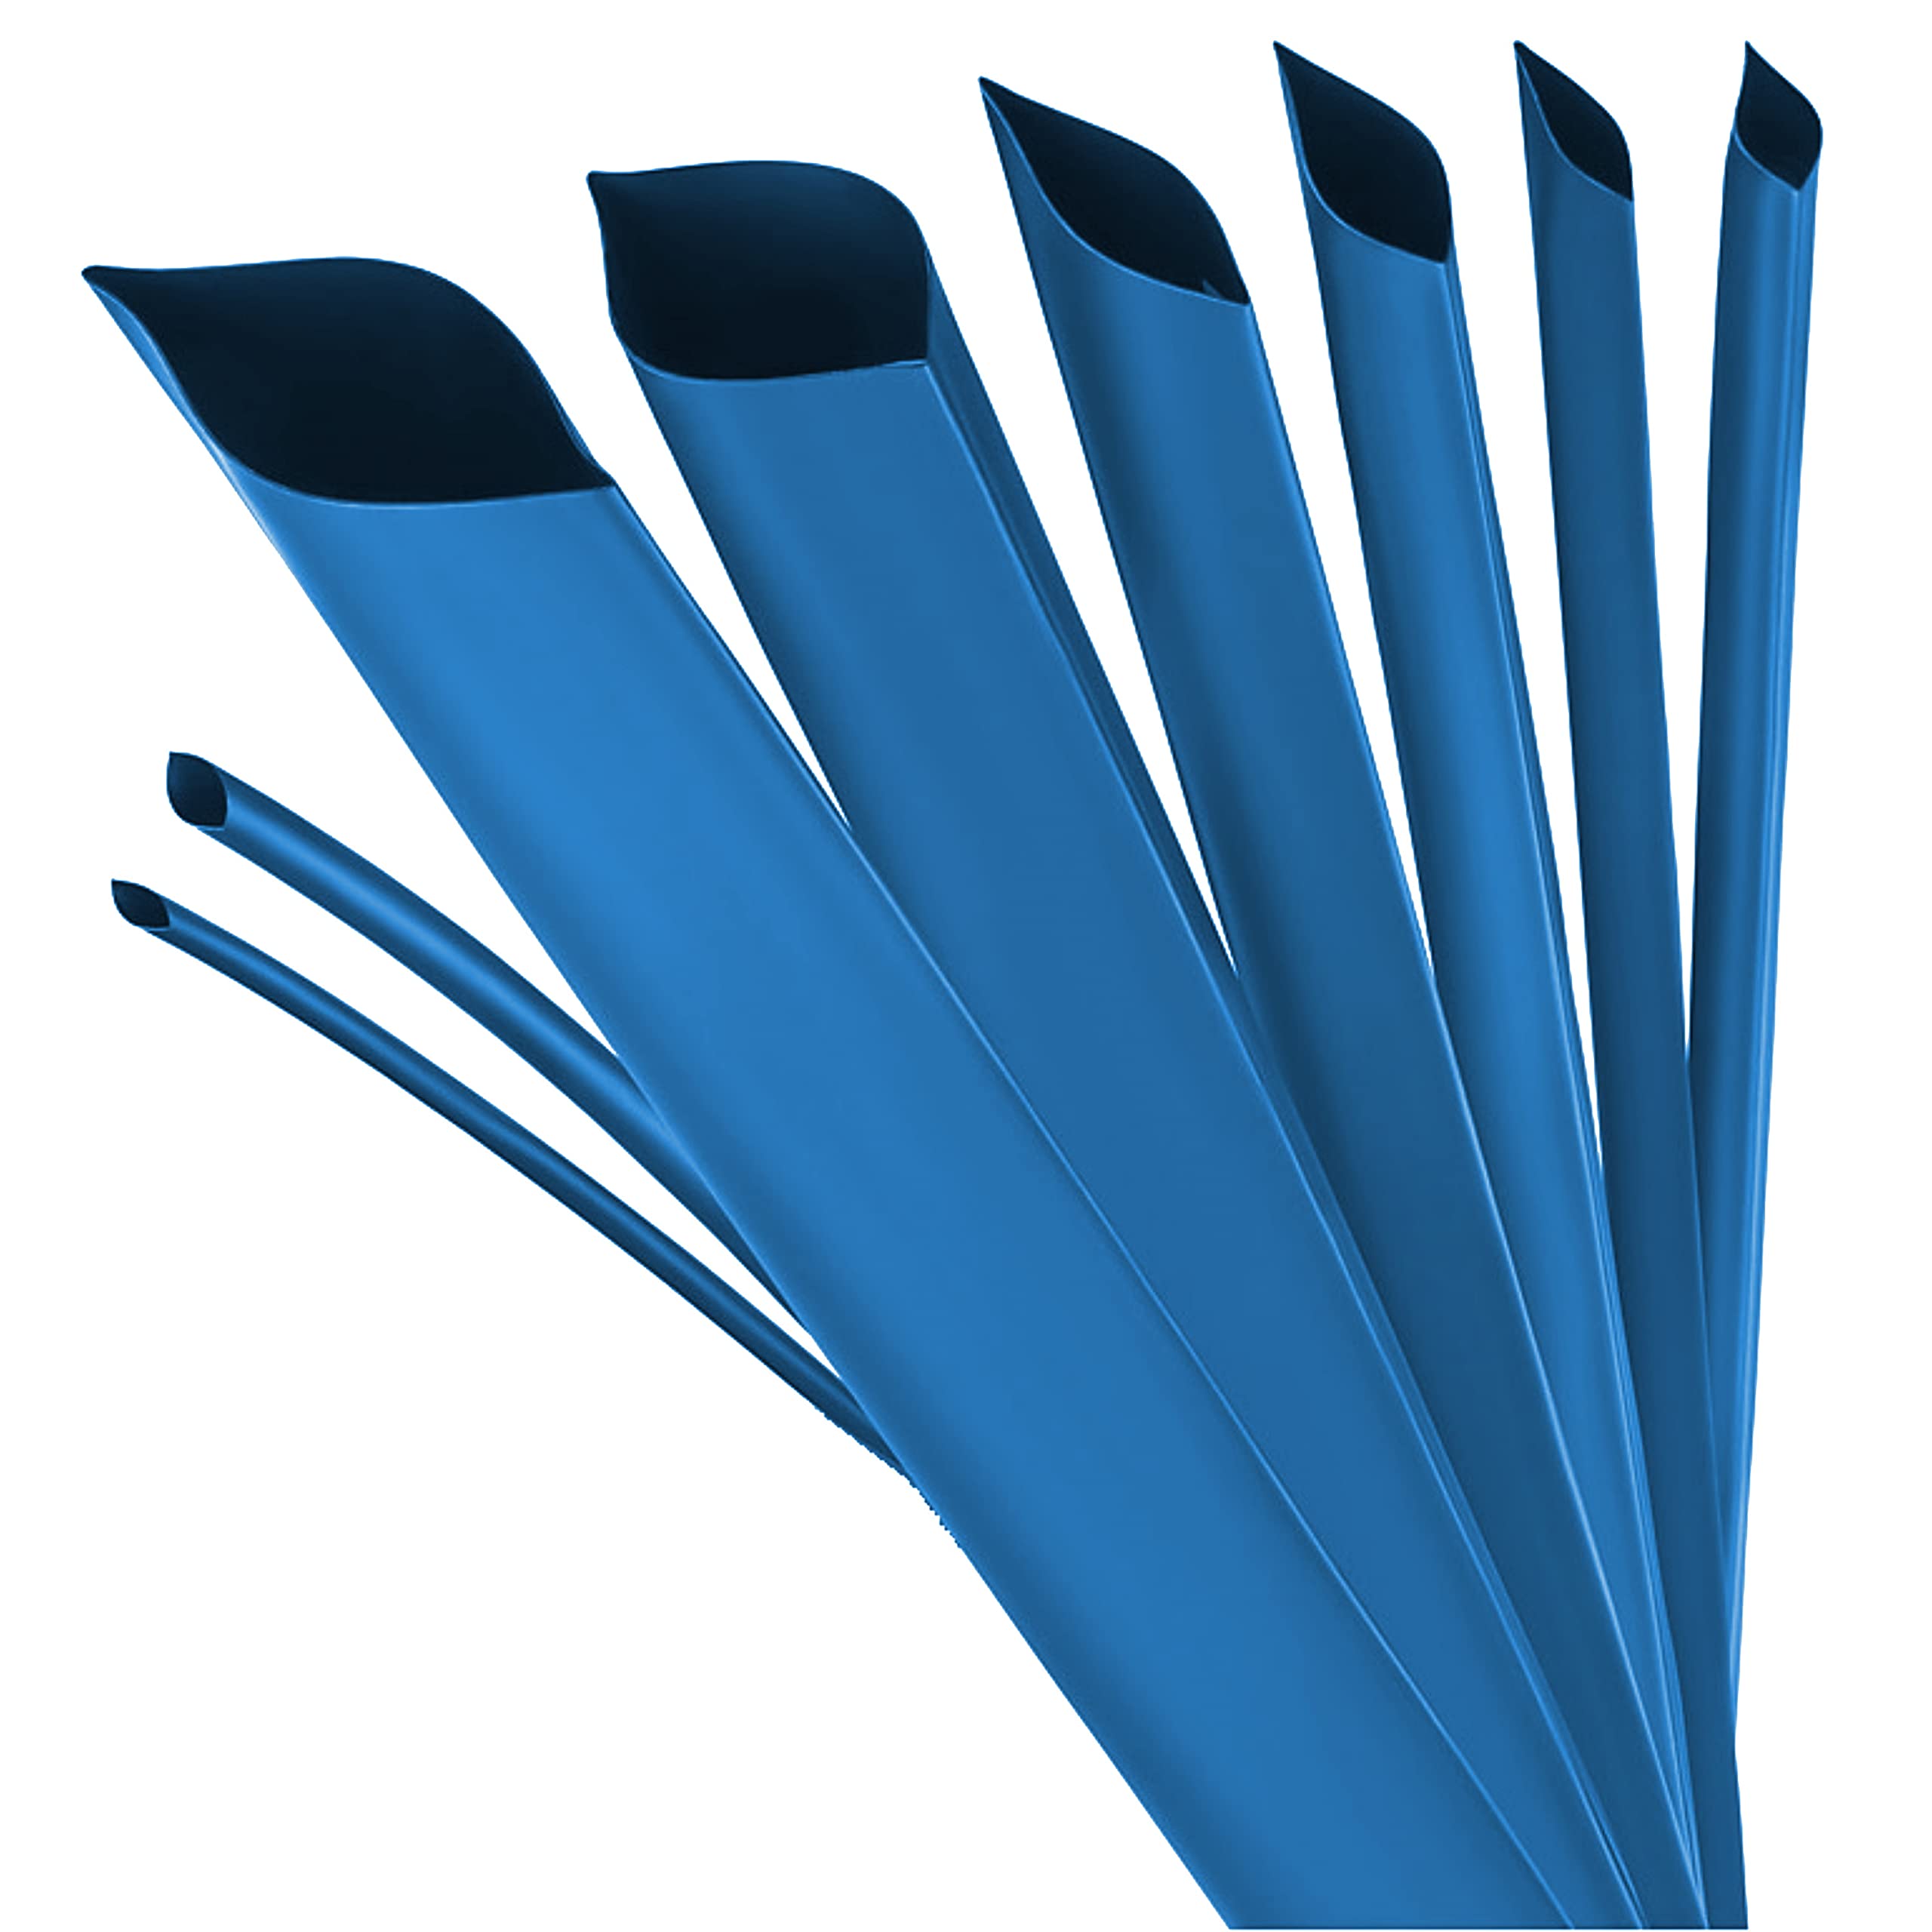 ISOLATECH Schrumpfschlauch Meterware blau ohne Kleber Ø 30mm 5 Meter Schrumpfverhältnis 3:1 Set Polyolefin zum Isolieren von Kabel Lötverbindungen unbeschriftet UV beständig (Ø30mm 5Meter)